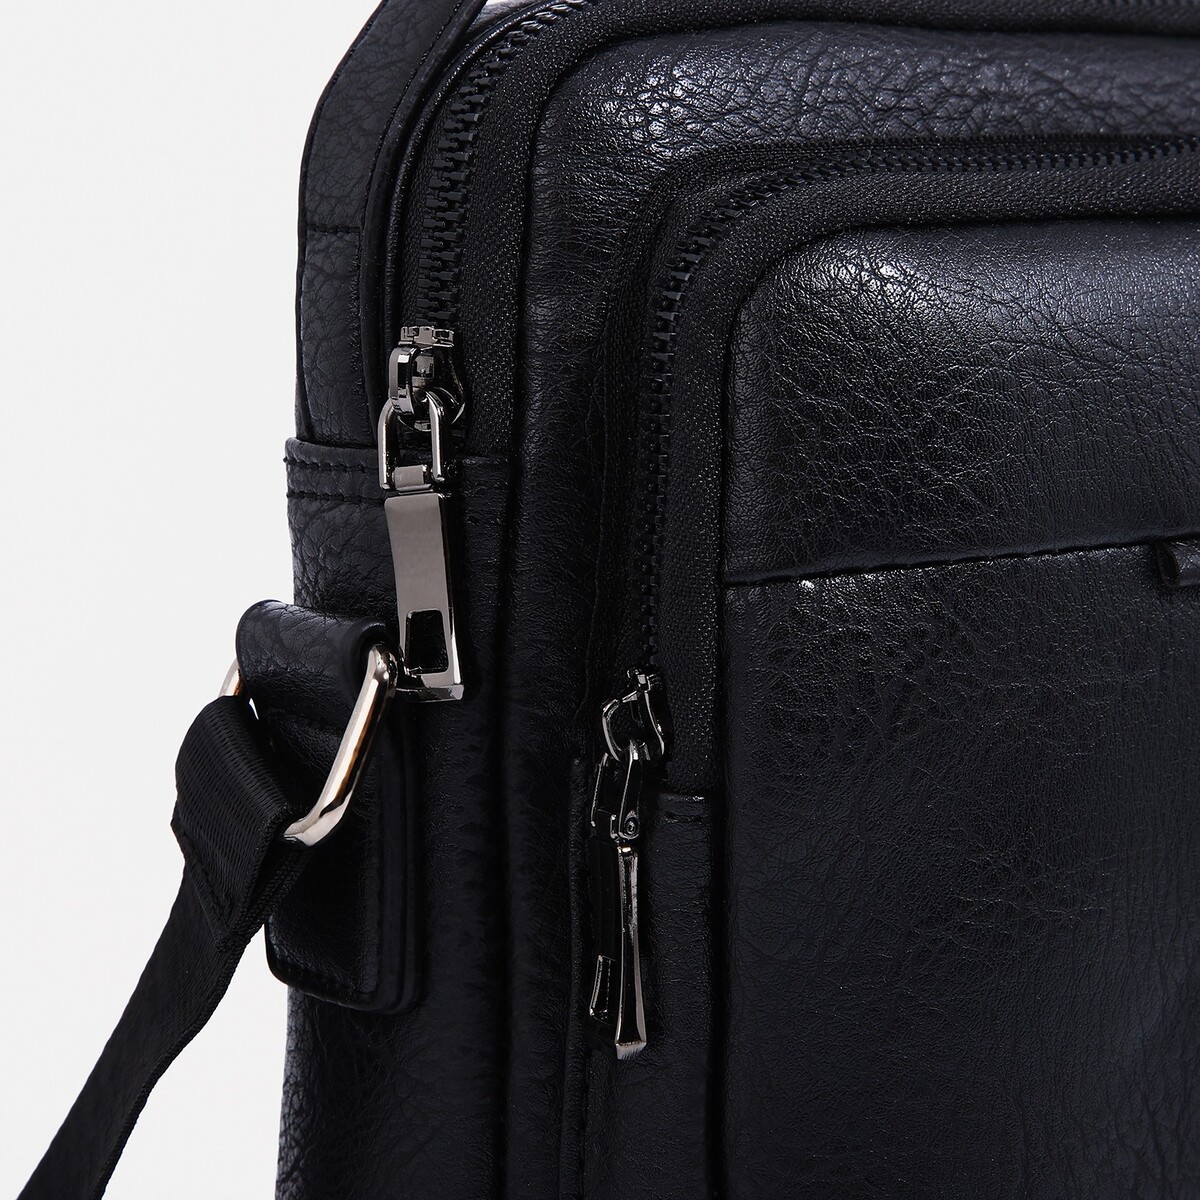 Сумка мужская на молнии, 2 наружных кармана, длинный ремень, цвет черный No brand, размер средний 04879255 планшет - фото 5